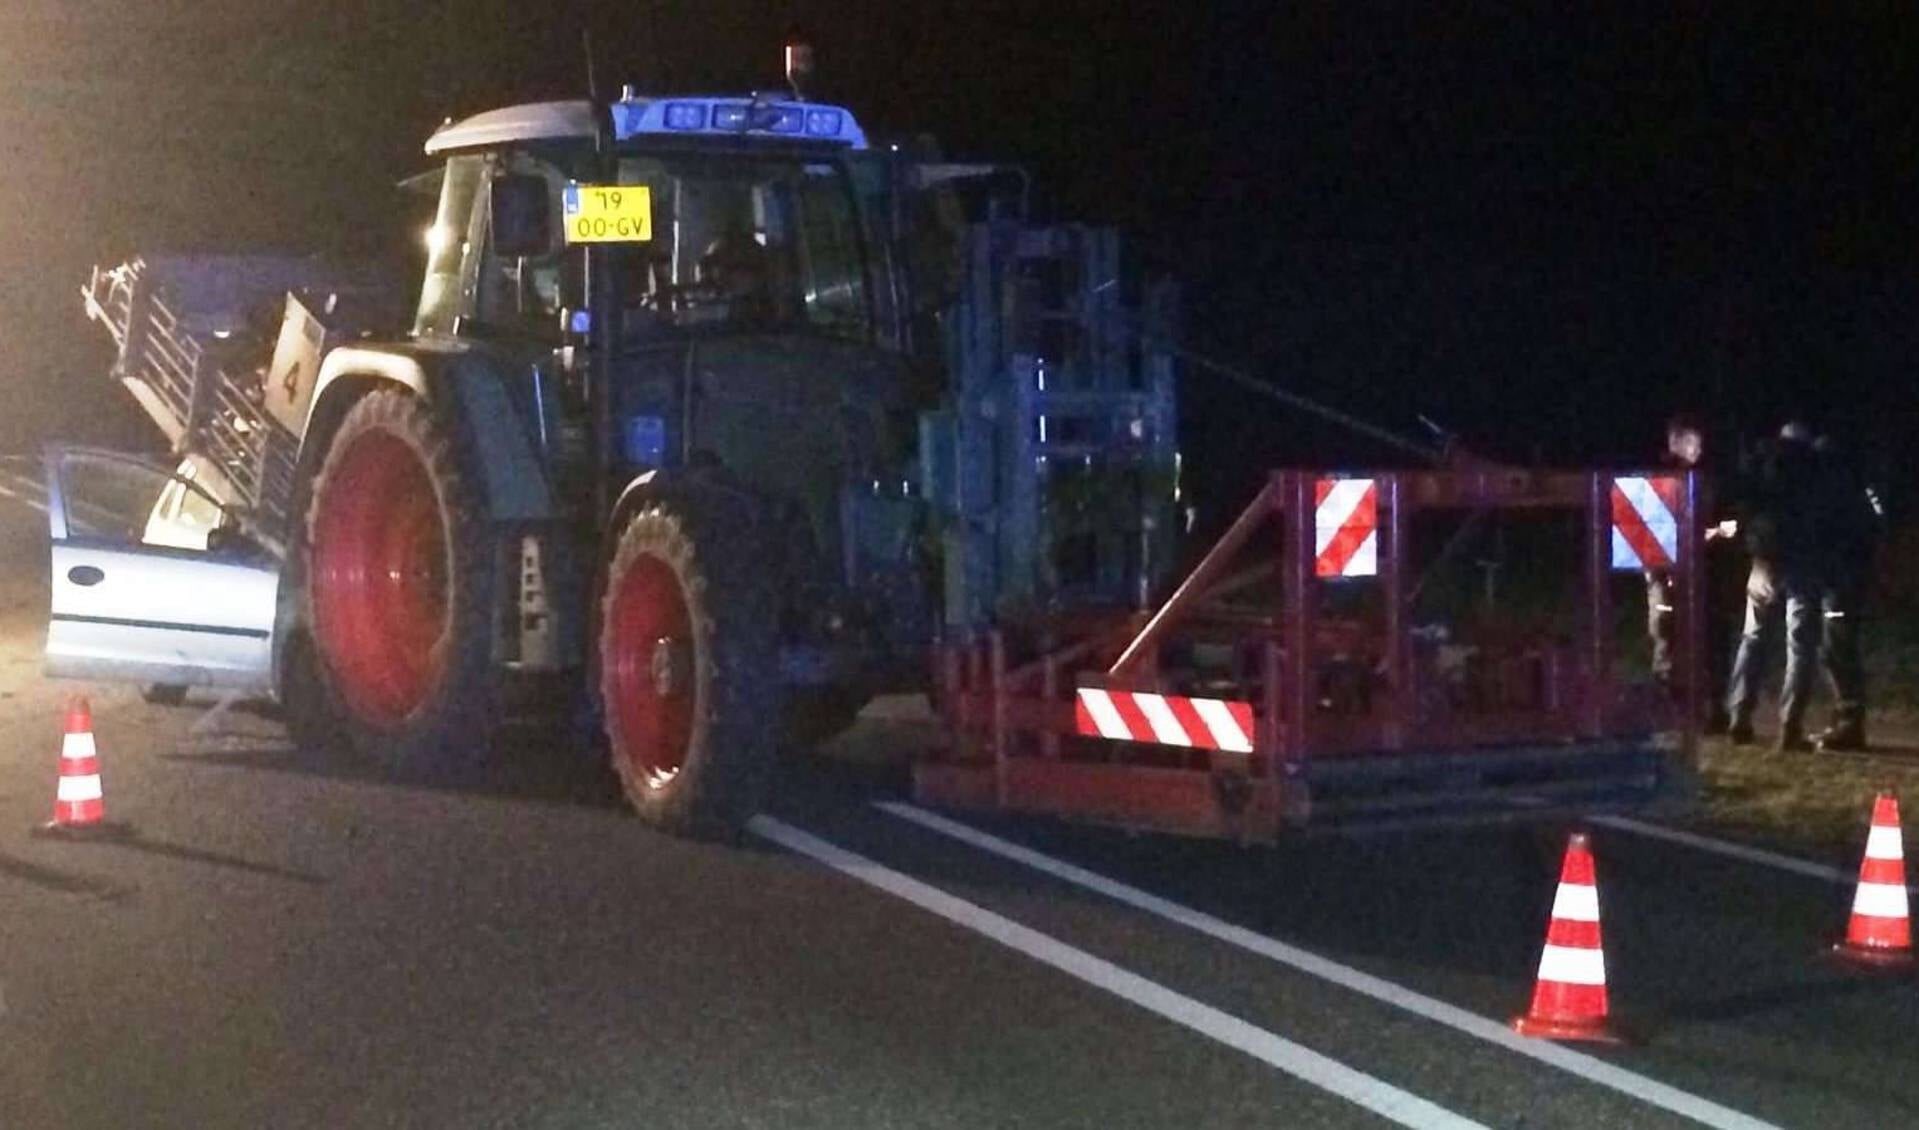 De man uit Ysselsteyn botste vrijdagavond met zijn auto achter op een tractor. Foto: Track88.